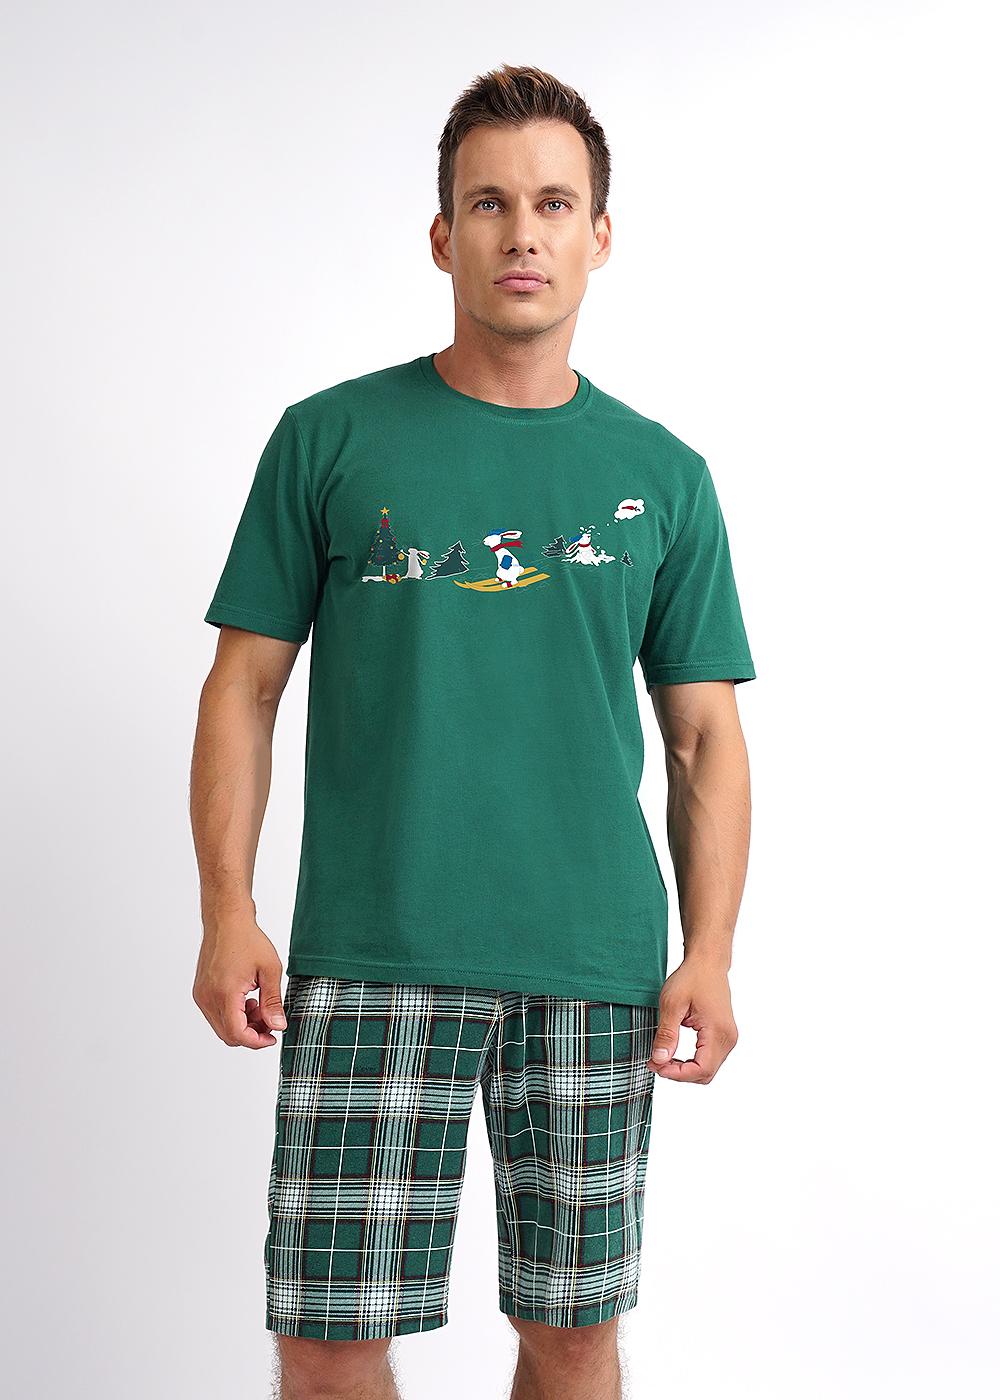 Комплект футболка + шорты Новый год для мужчин Clever 173003